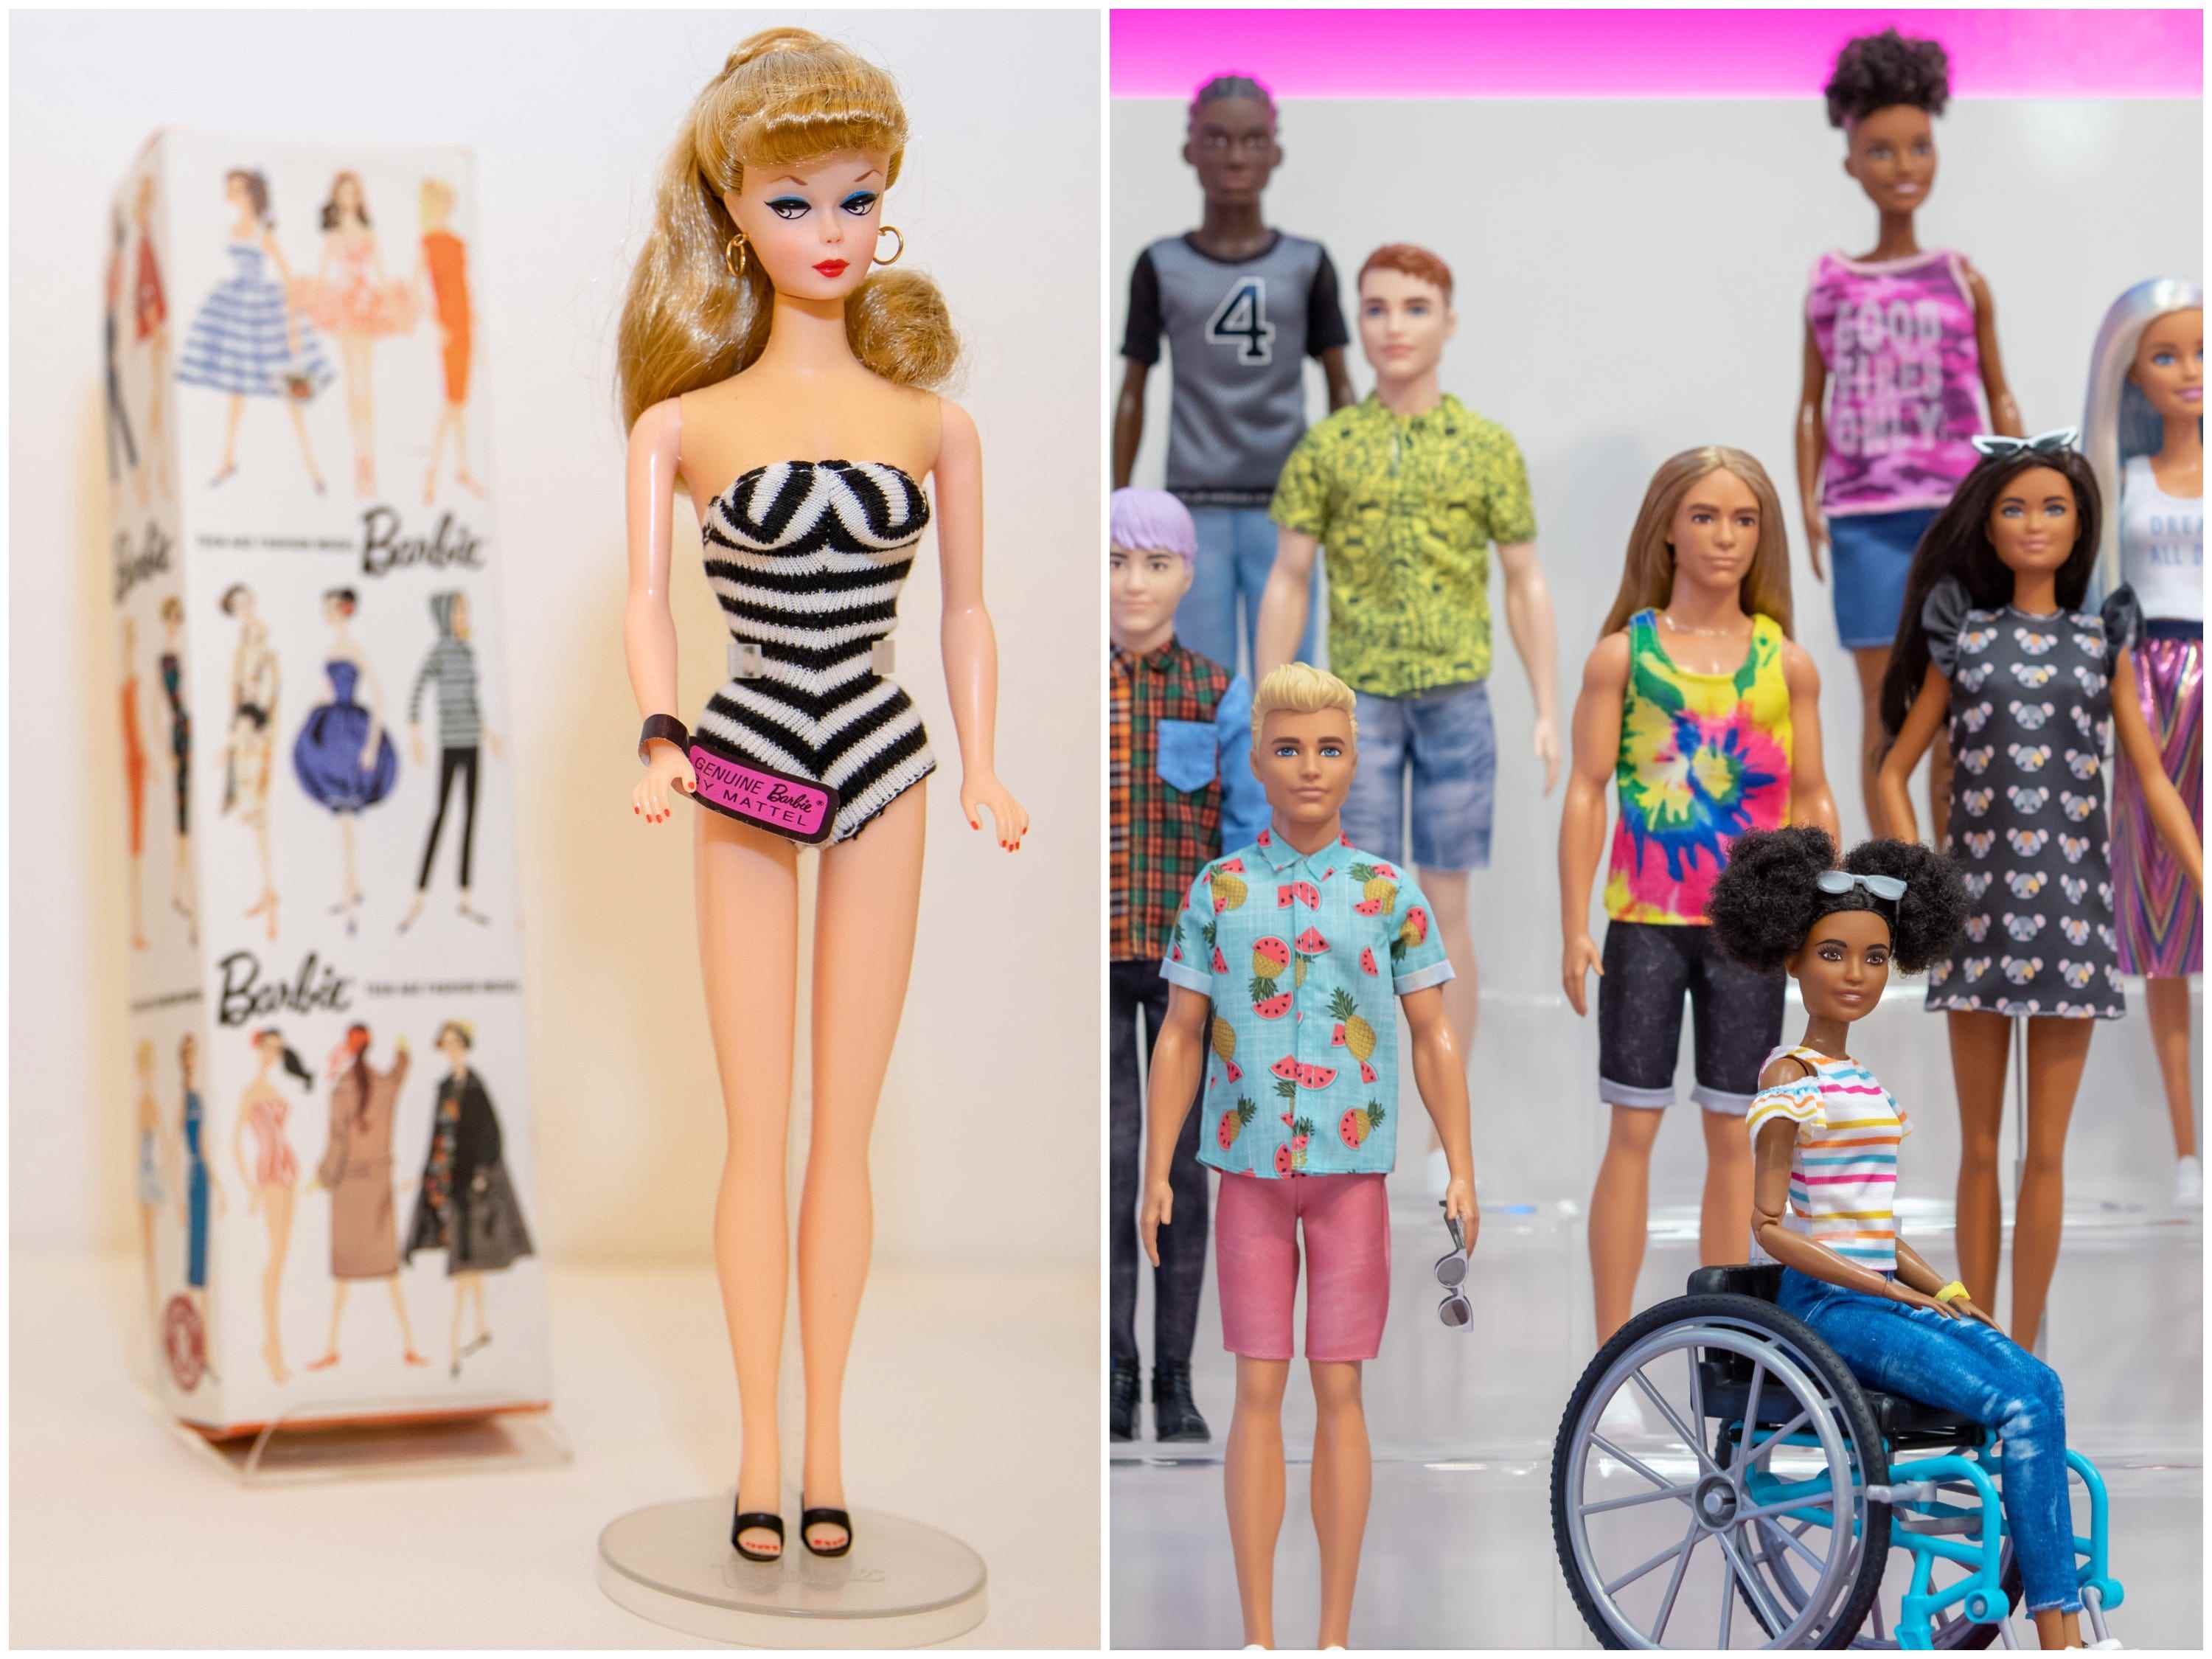 Eine Barbie von 1959 vs. Barbies von heute (2020)